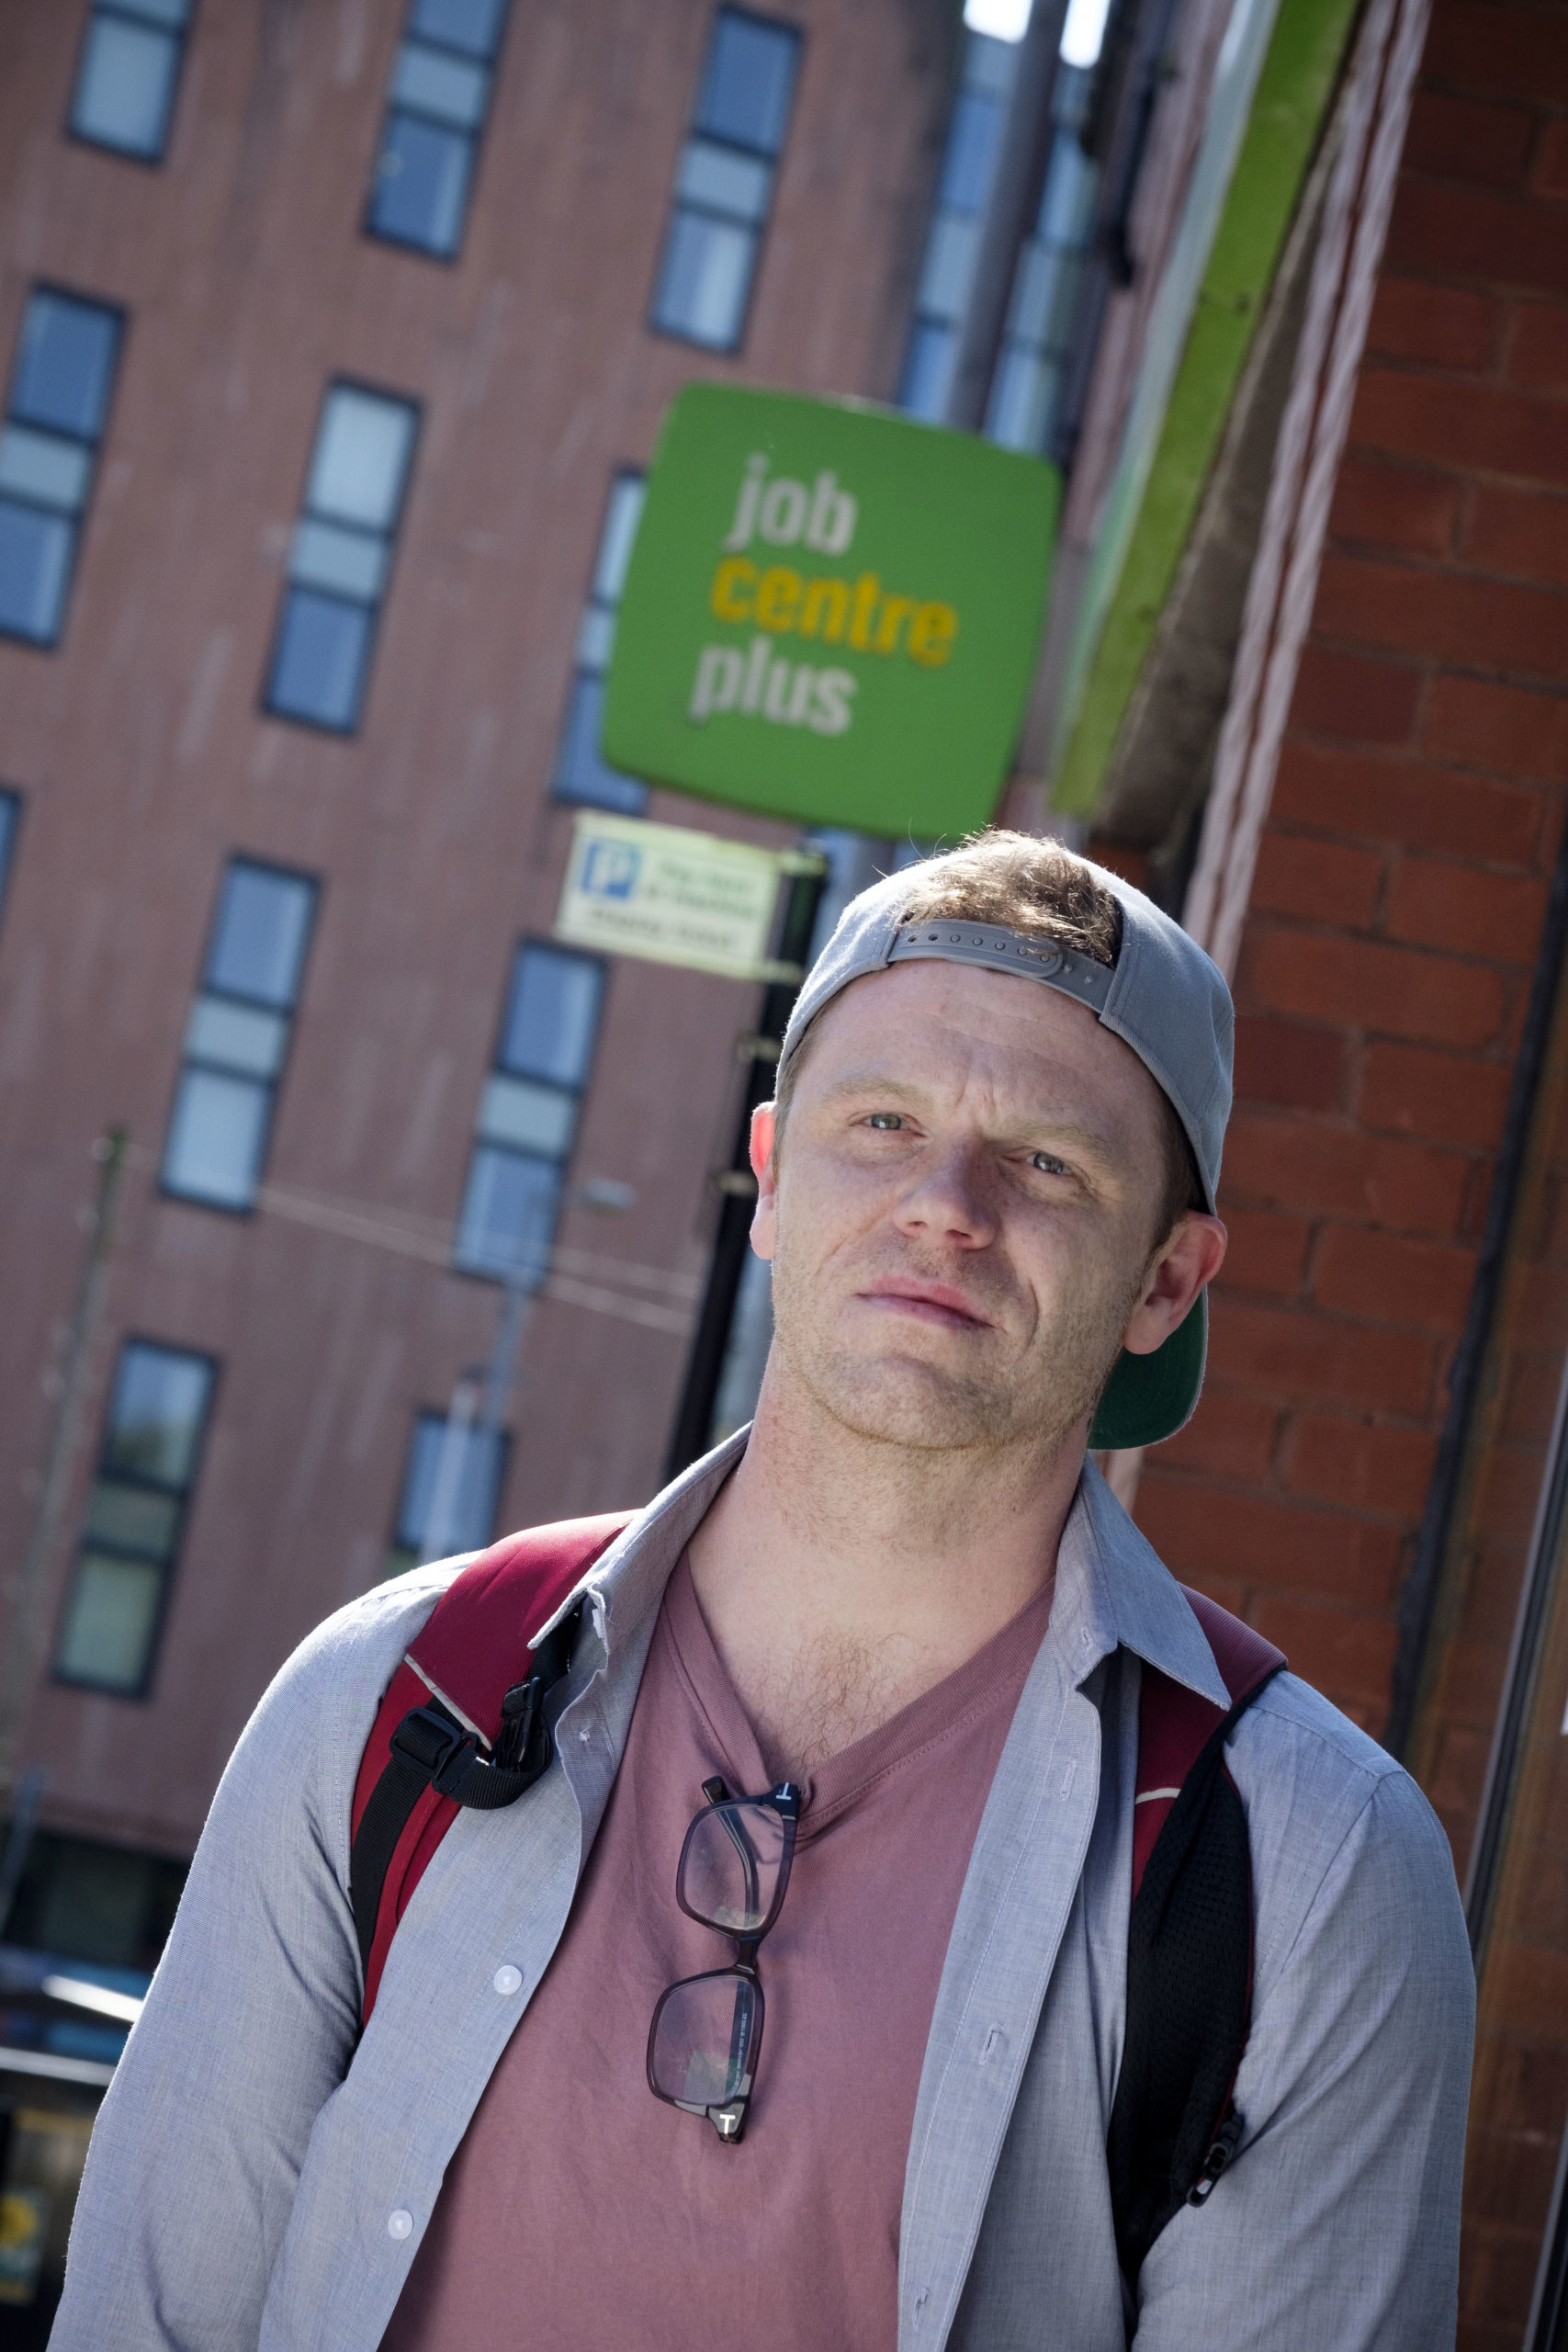 Darren McGarvey pictured outside Partick Job Centre. Credit: Peter Byrne